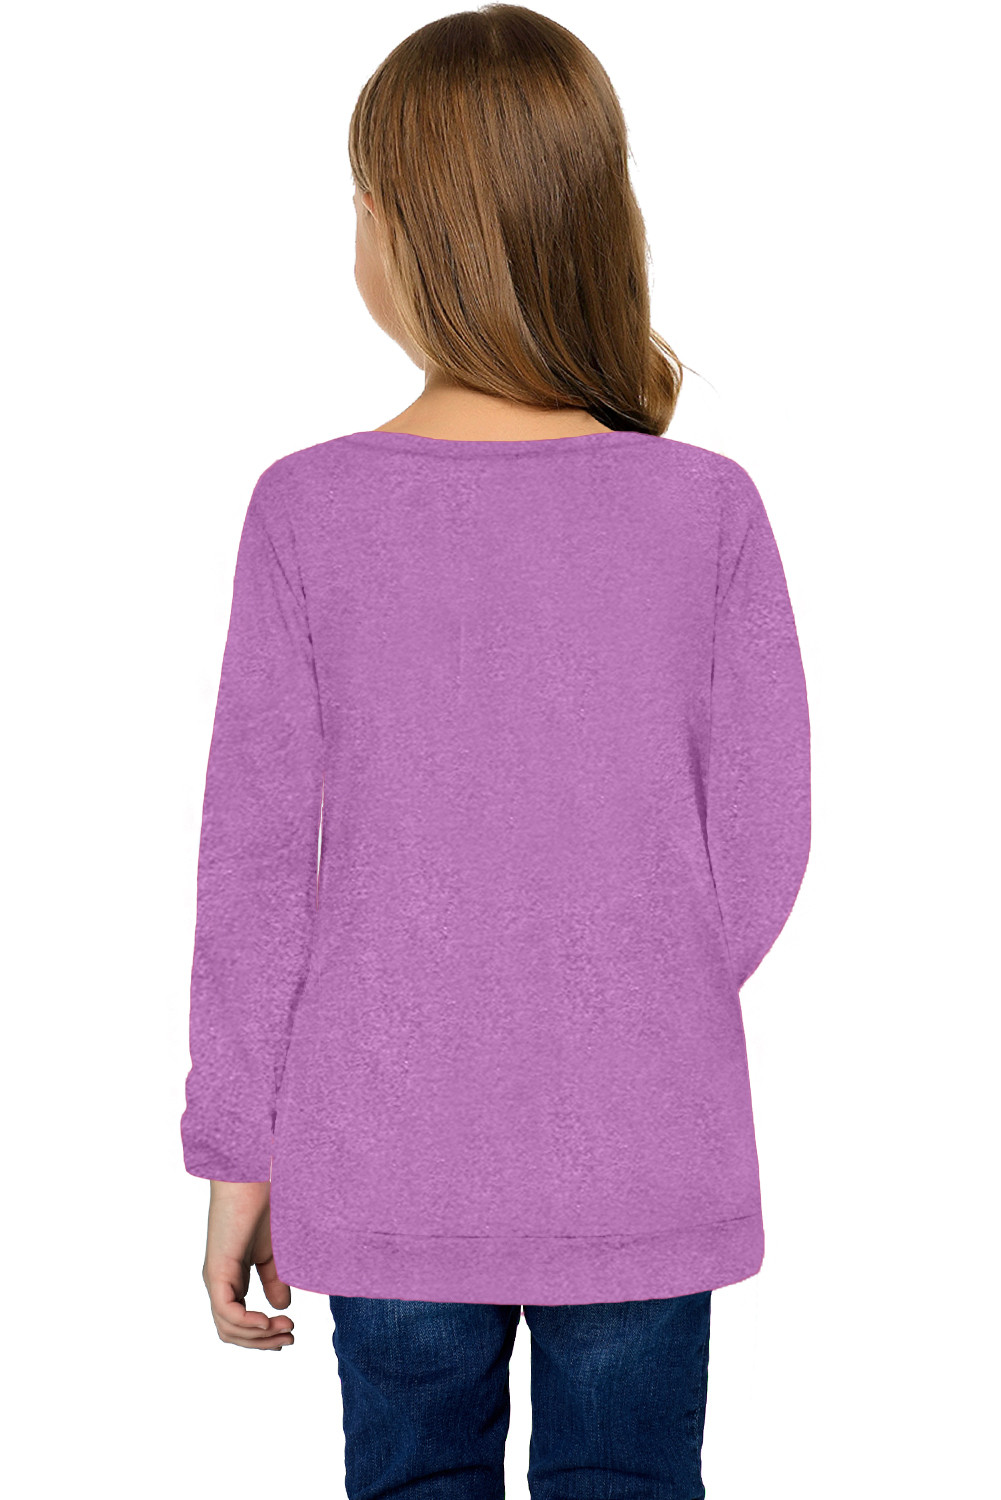 紫色圆领小女孩长袖侧纽扣细节舒适上衣 TZ25122